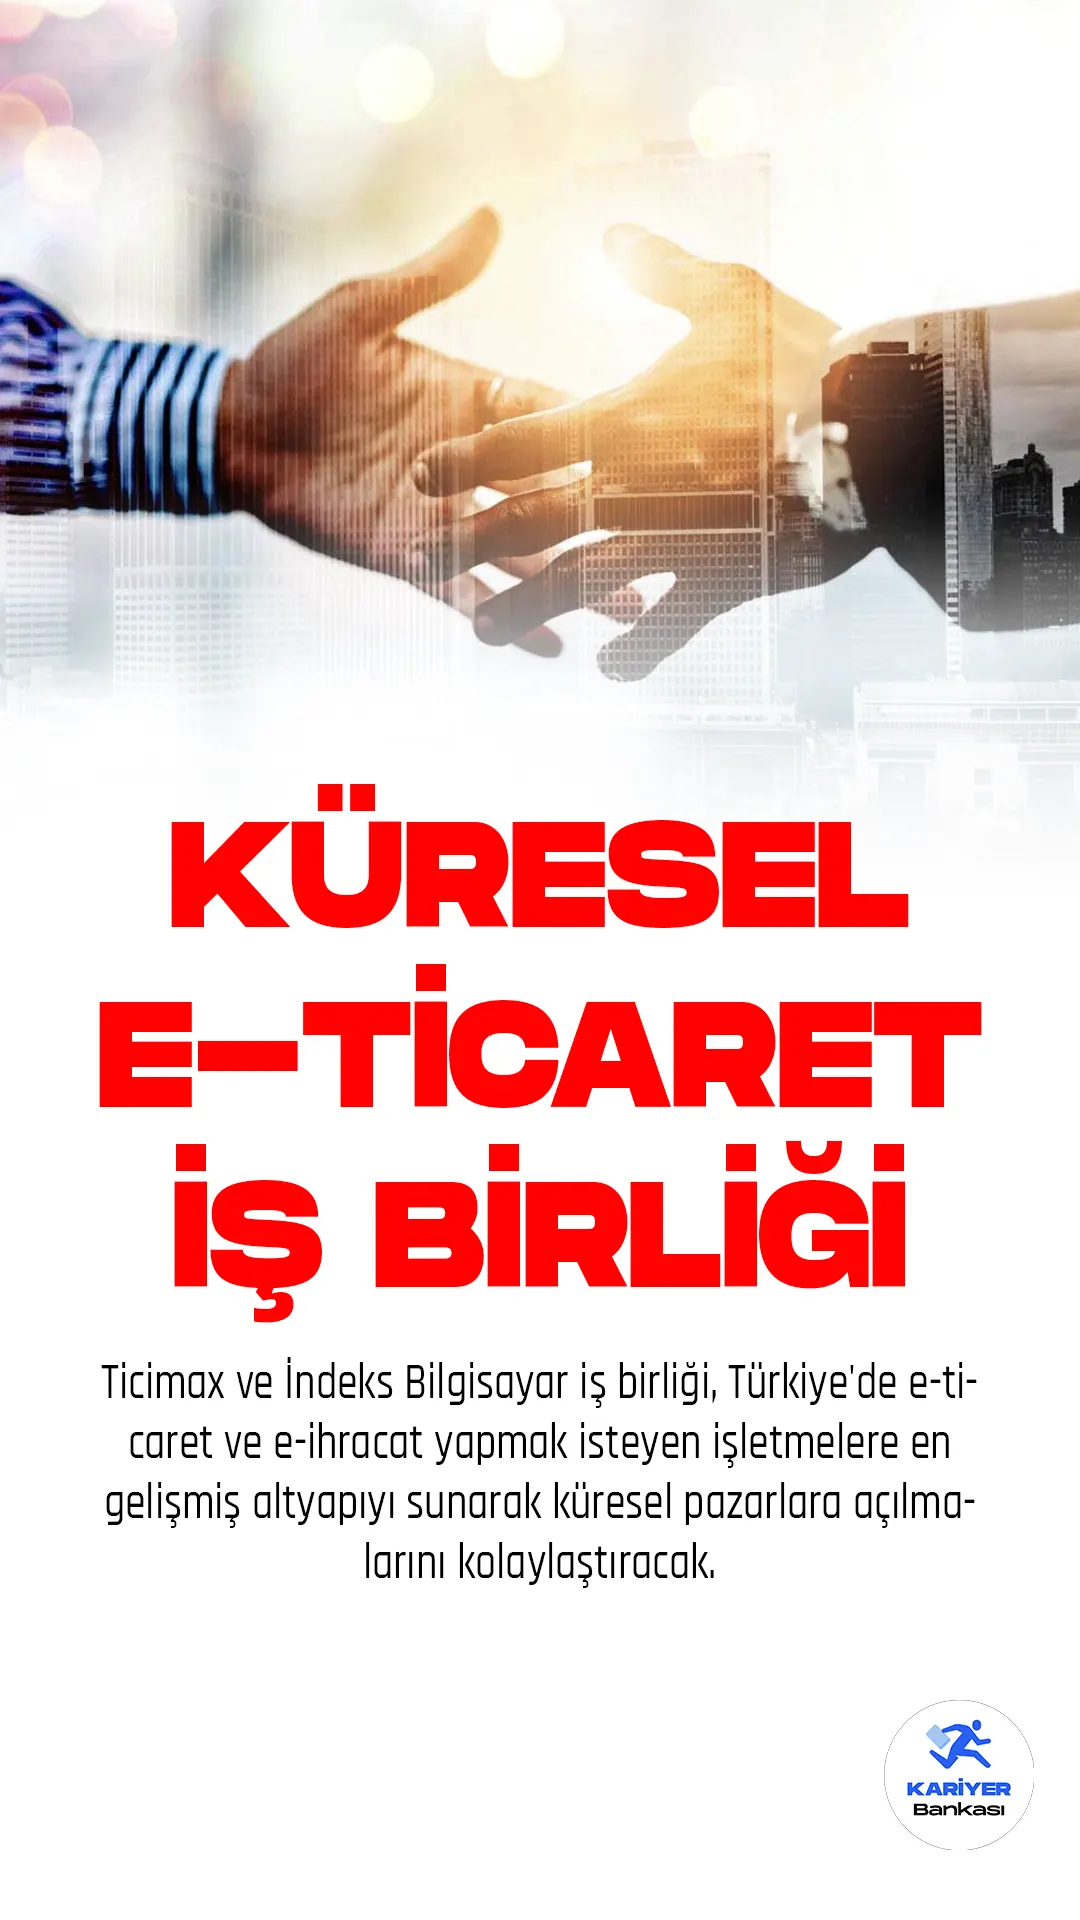 Ticimax ve İndeks Bilgisayar iş birliği, Türkiye'de e-ticaret ve e-ihracat yapmak isteyen işletmelere en gelişmiş altyapıyı sunarak küresel pazarlara açılmalarını kolaylaştıracak.